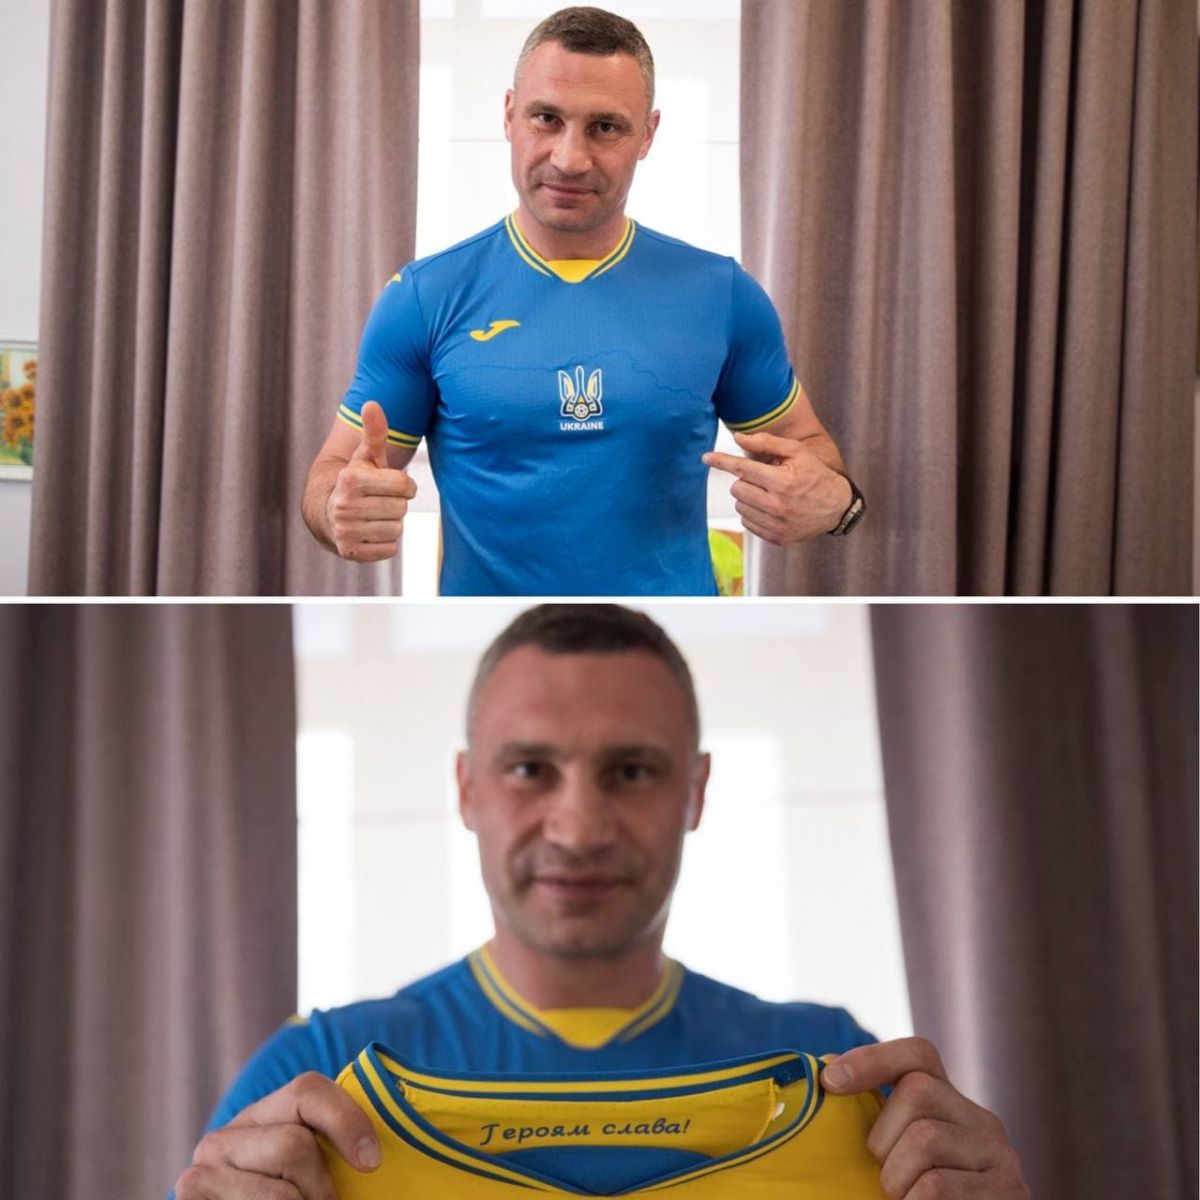 Кличко примерил скандальную форму сборной Украины, фото — Телеграм Кличко